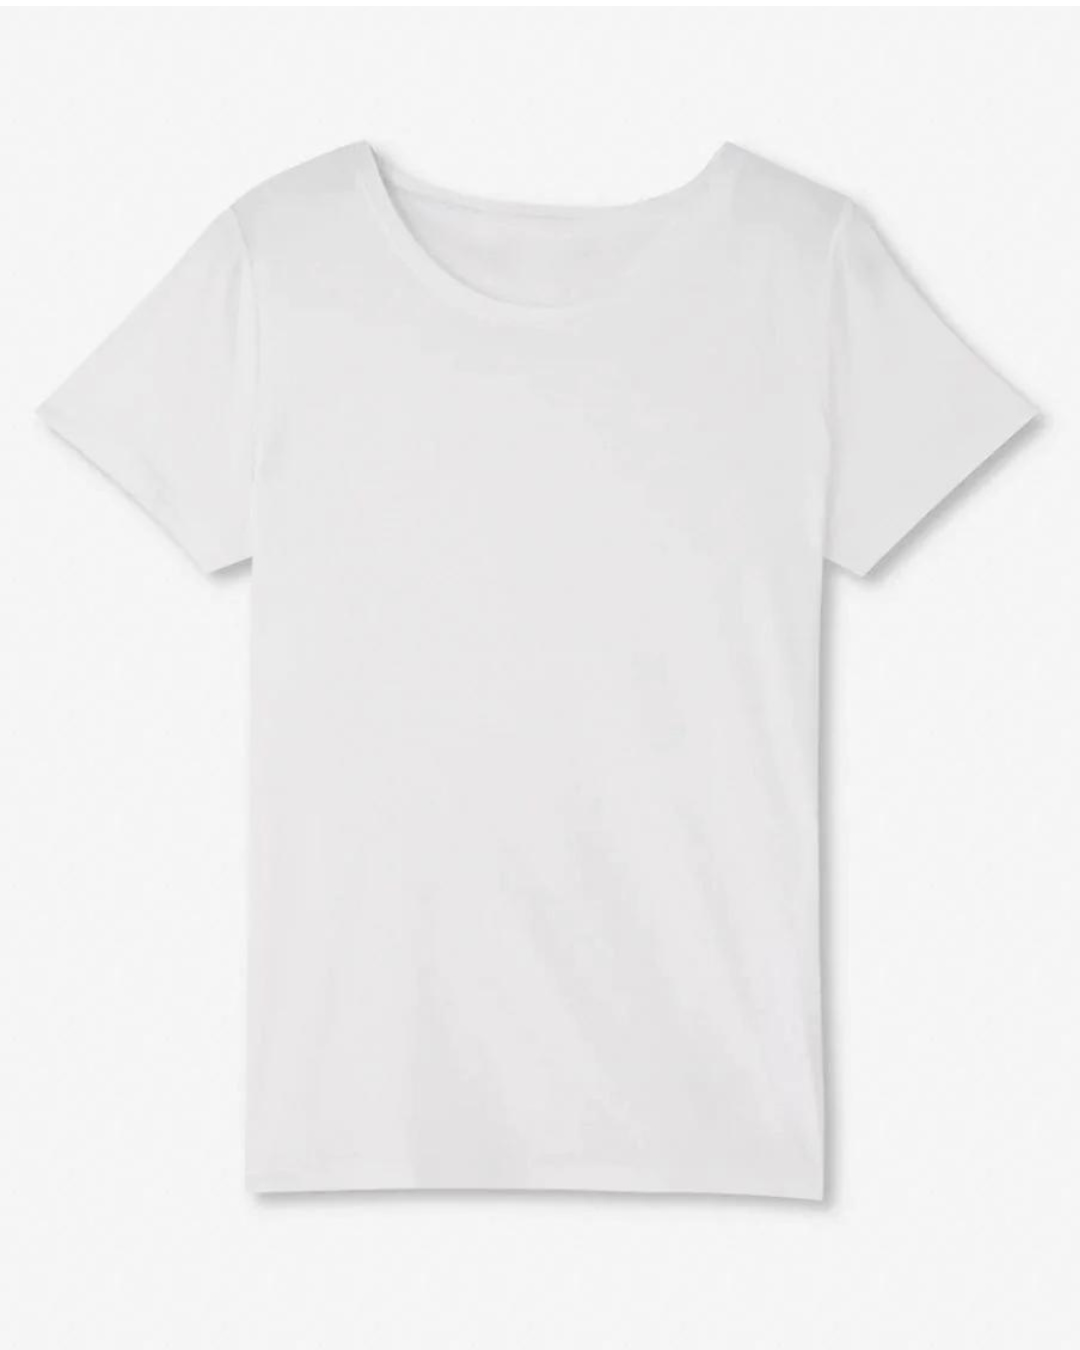 Spring Capsule Wardroble Basic White Tshirt Style